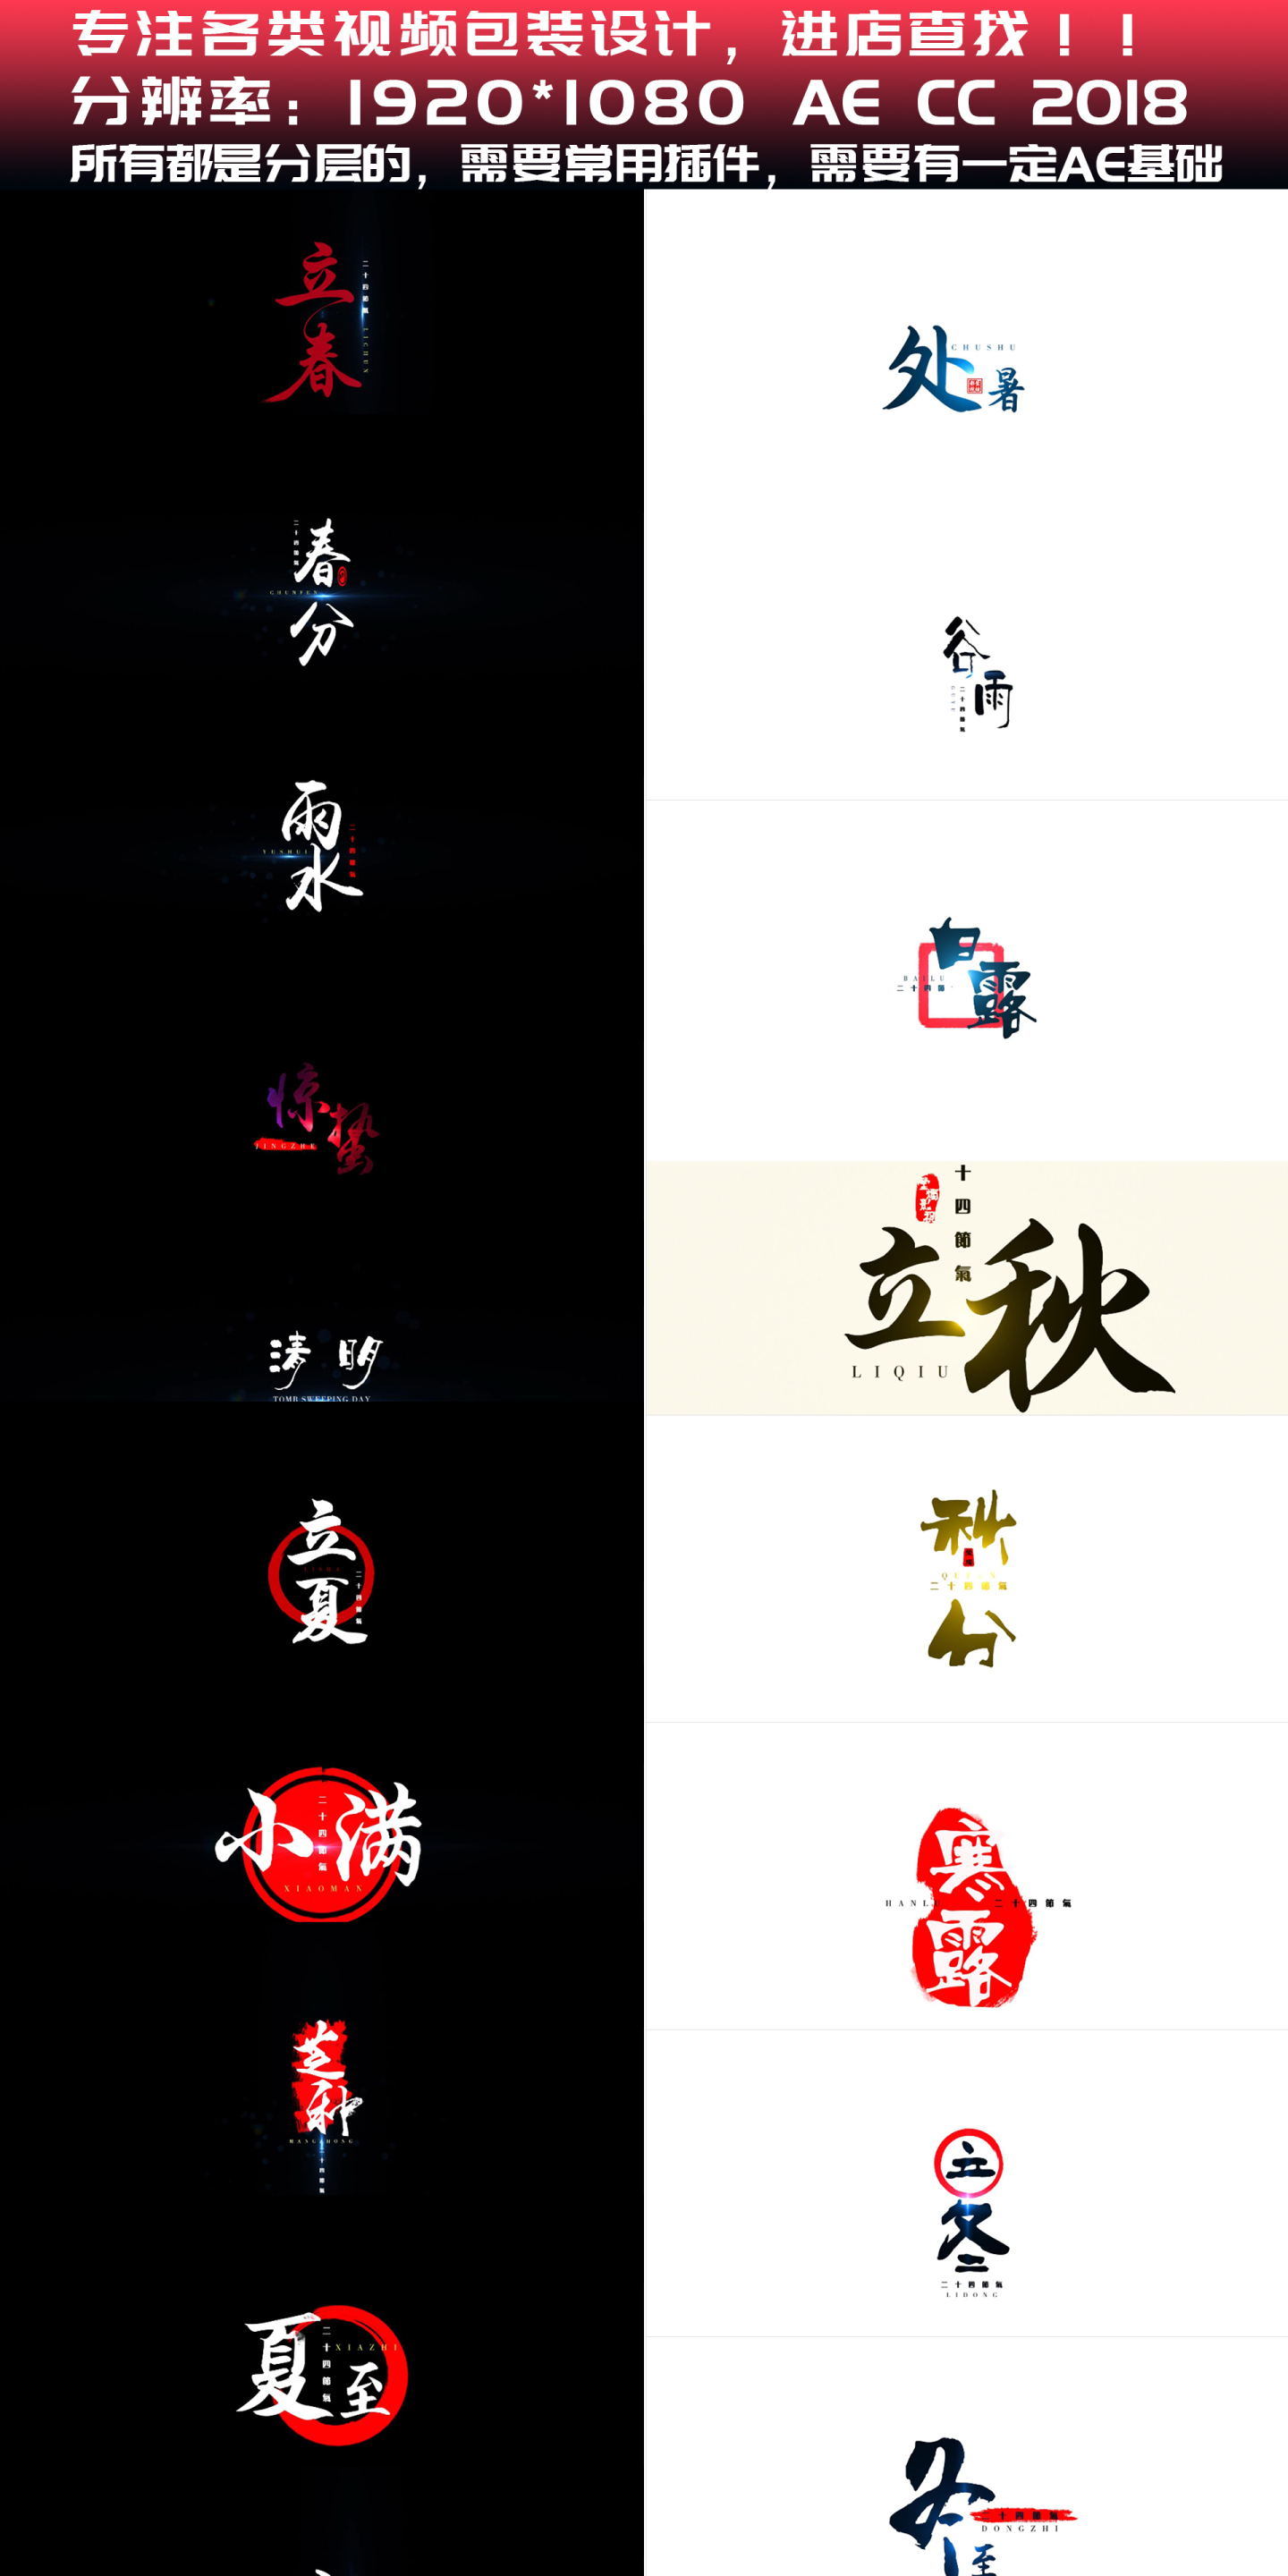 【AE模板】中国风标题文字动画-24节气